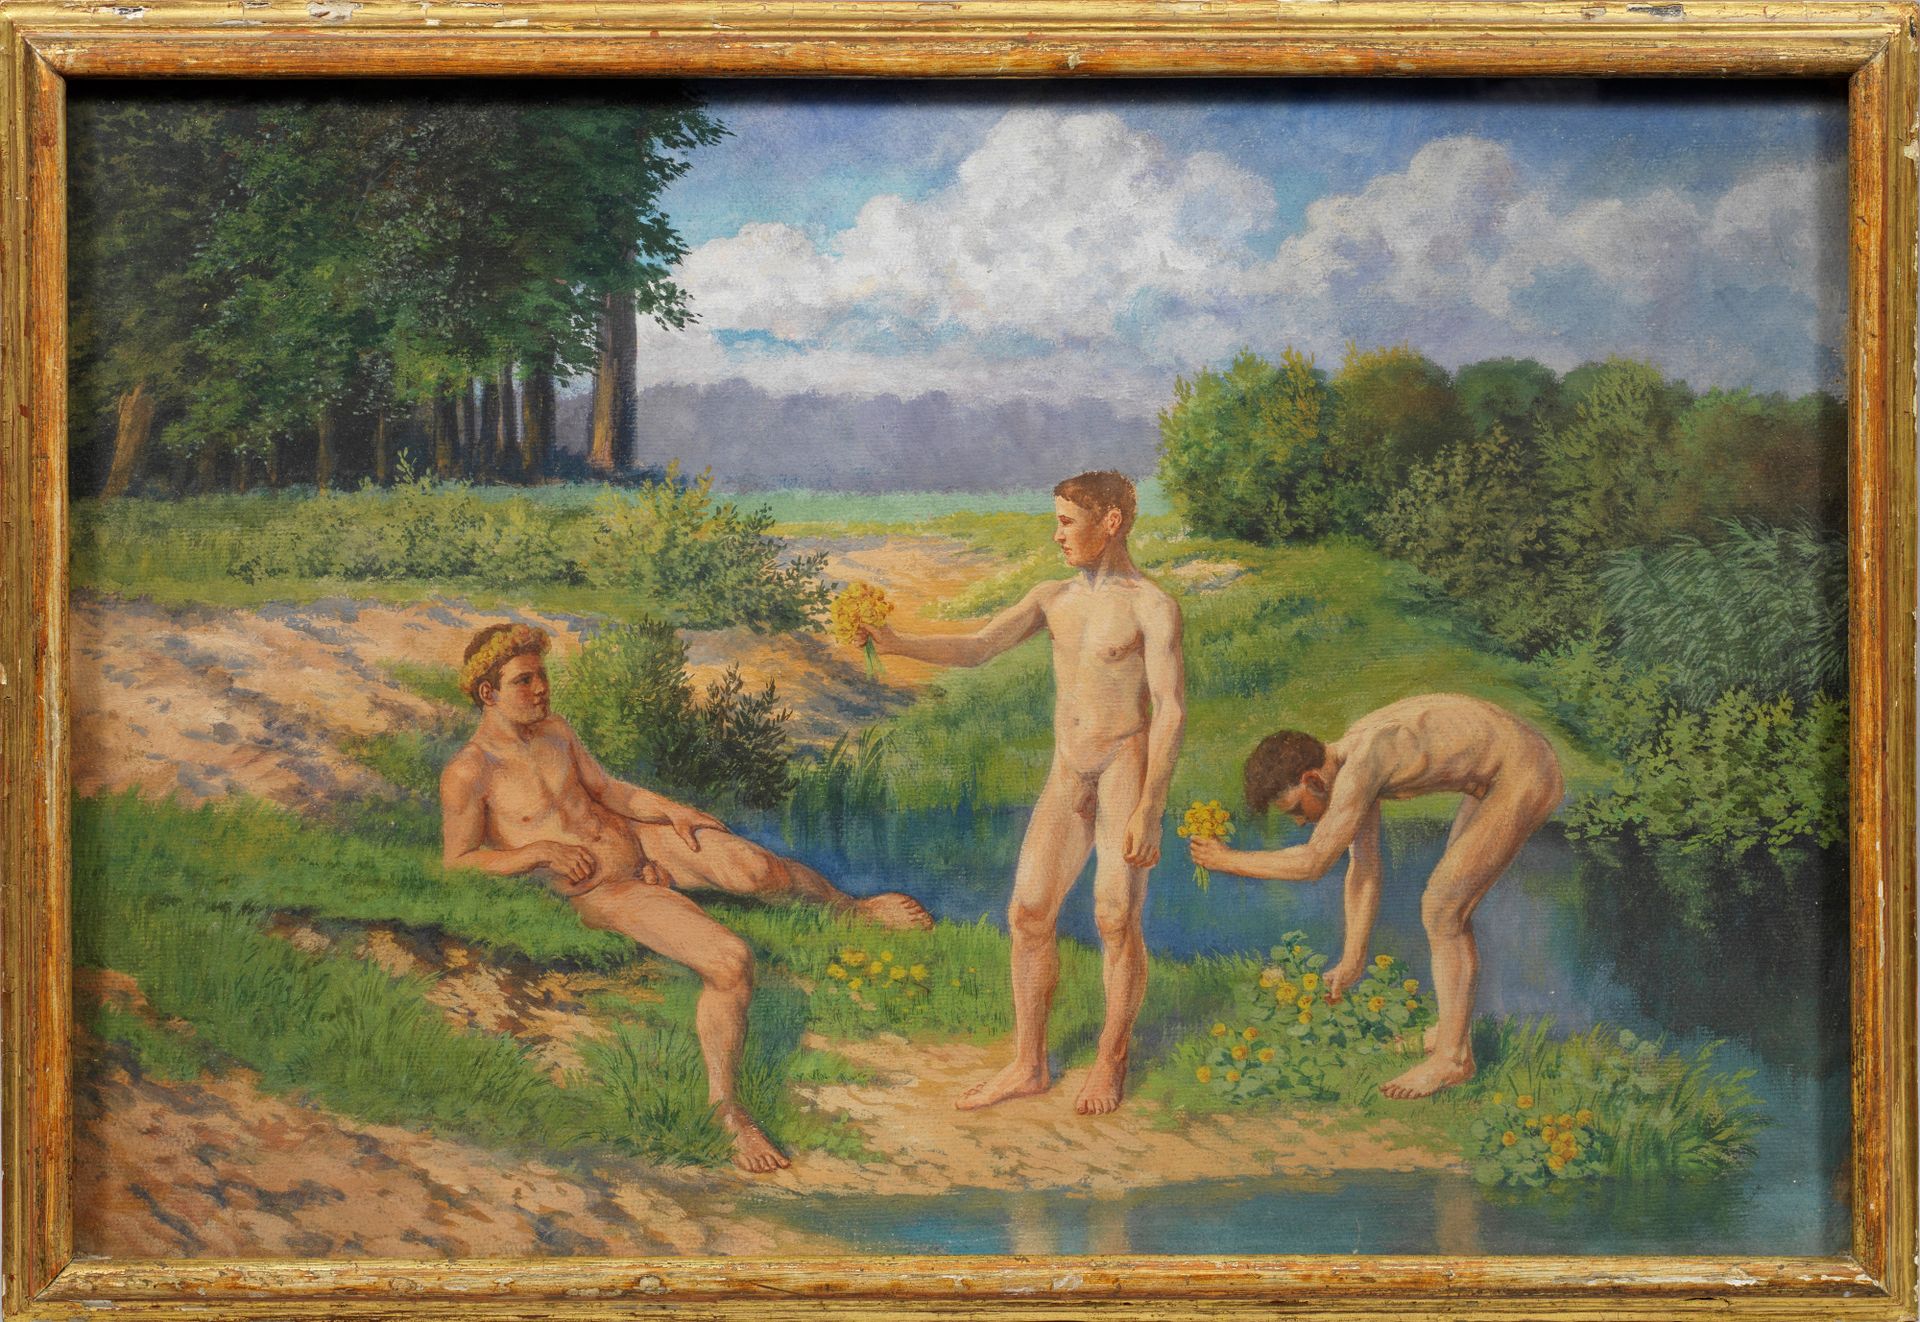 Null 德国或奥地利新艺术派画家（活跃于 1900 年左右）
三个年轻人
乌云密布的天空下，在一幅色彩鲜艳的夏日绿色风景画中，三个年轻人正在湖边采摘黄色的花朵&hellip;